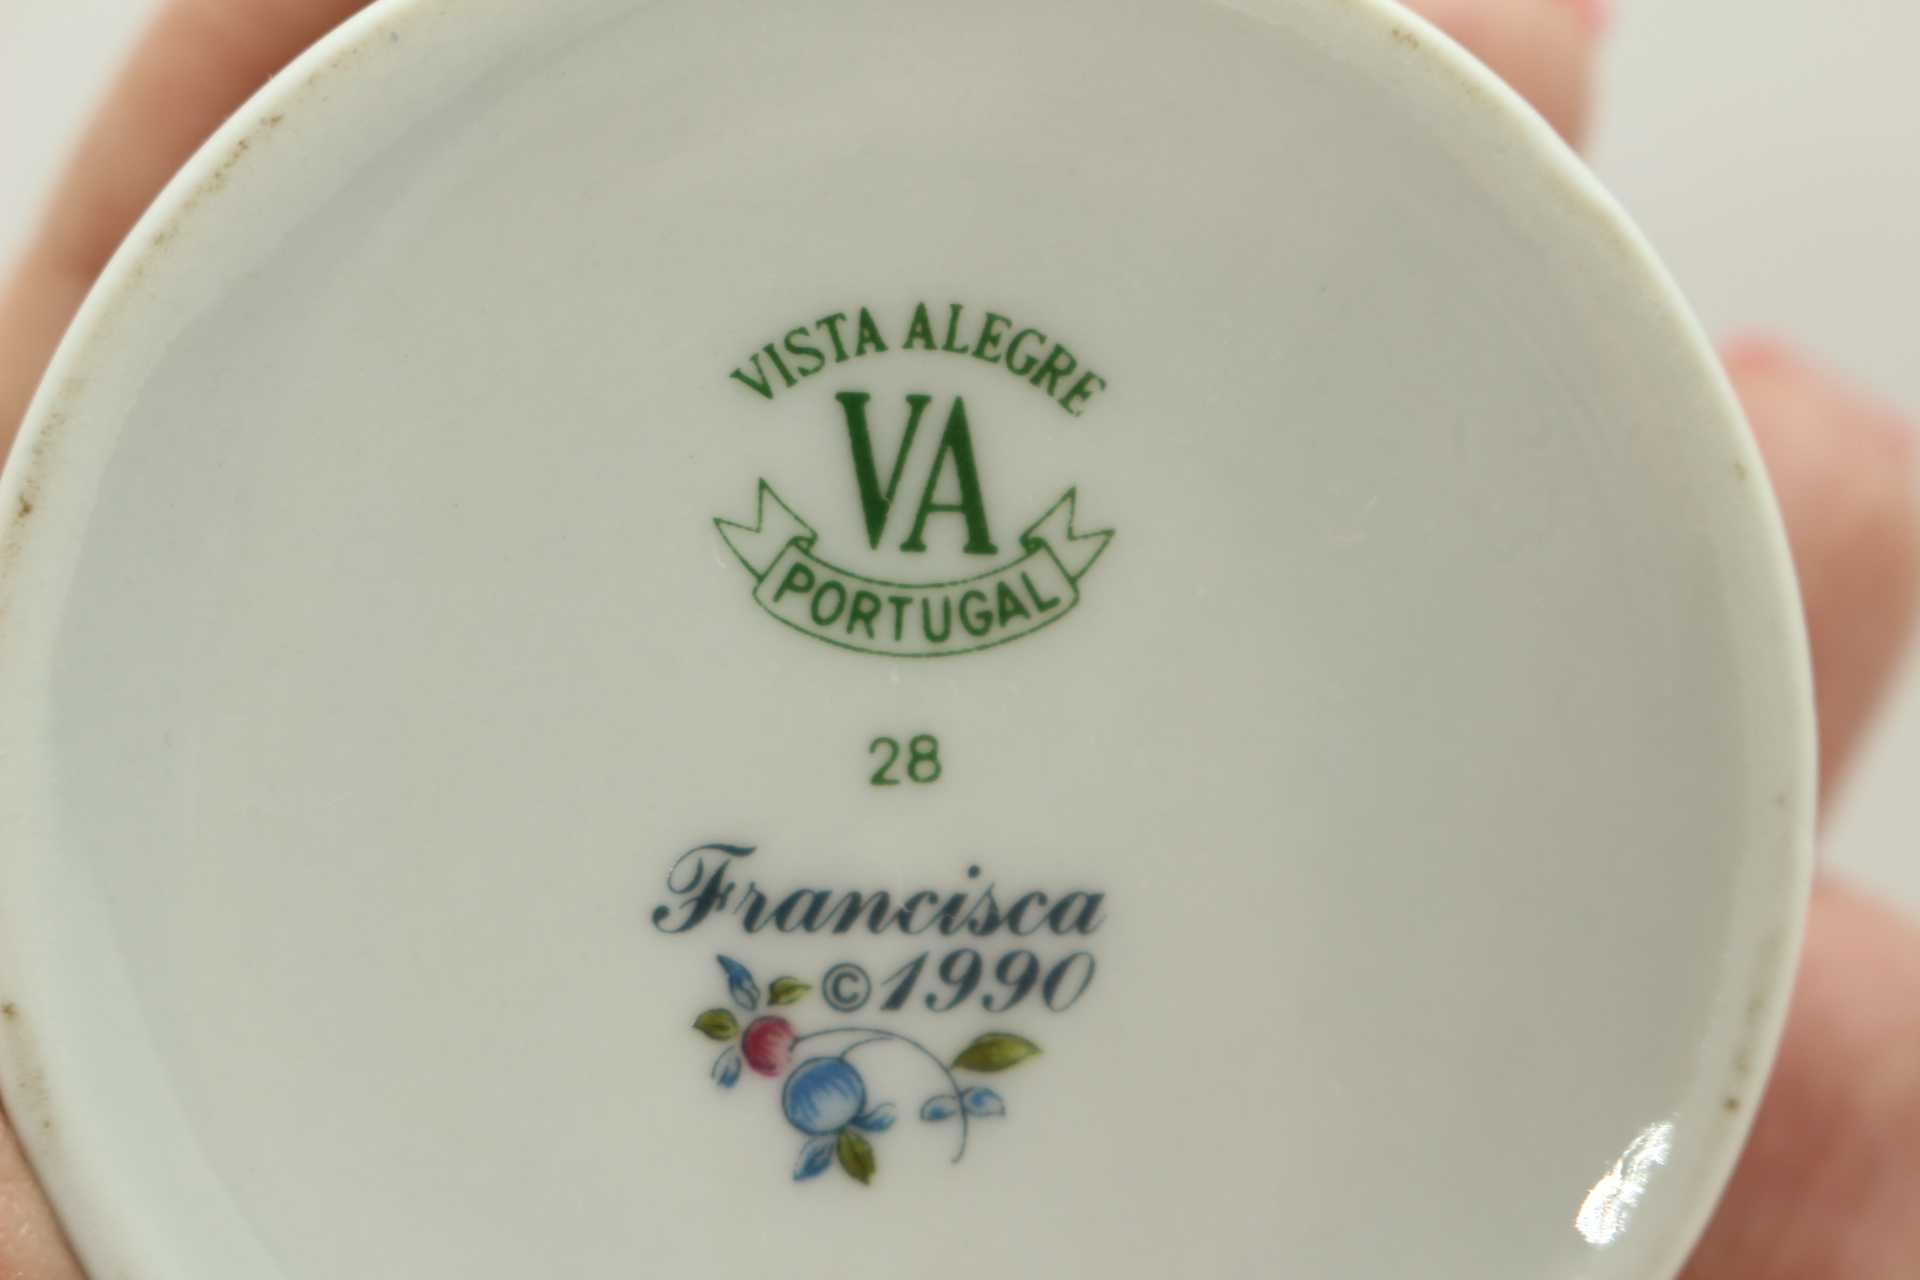 Caixa Regaleira Coleção "Francisca 1990" Vista Alegre